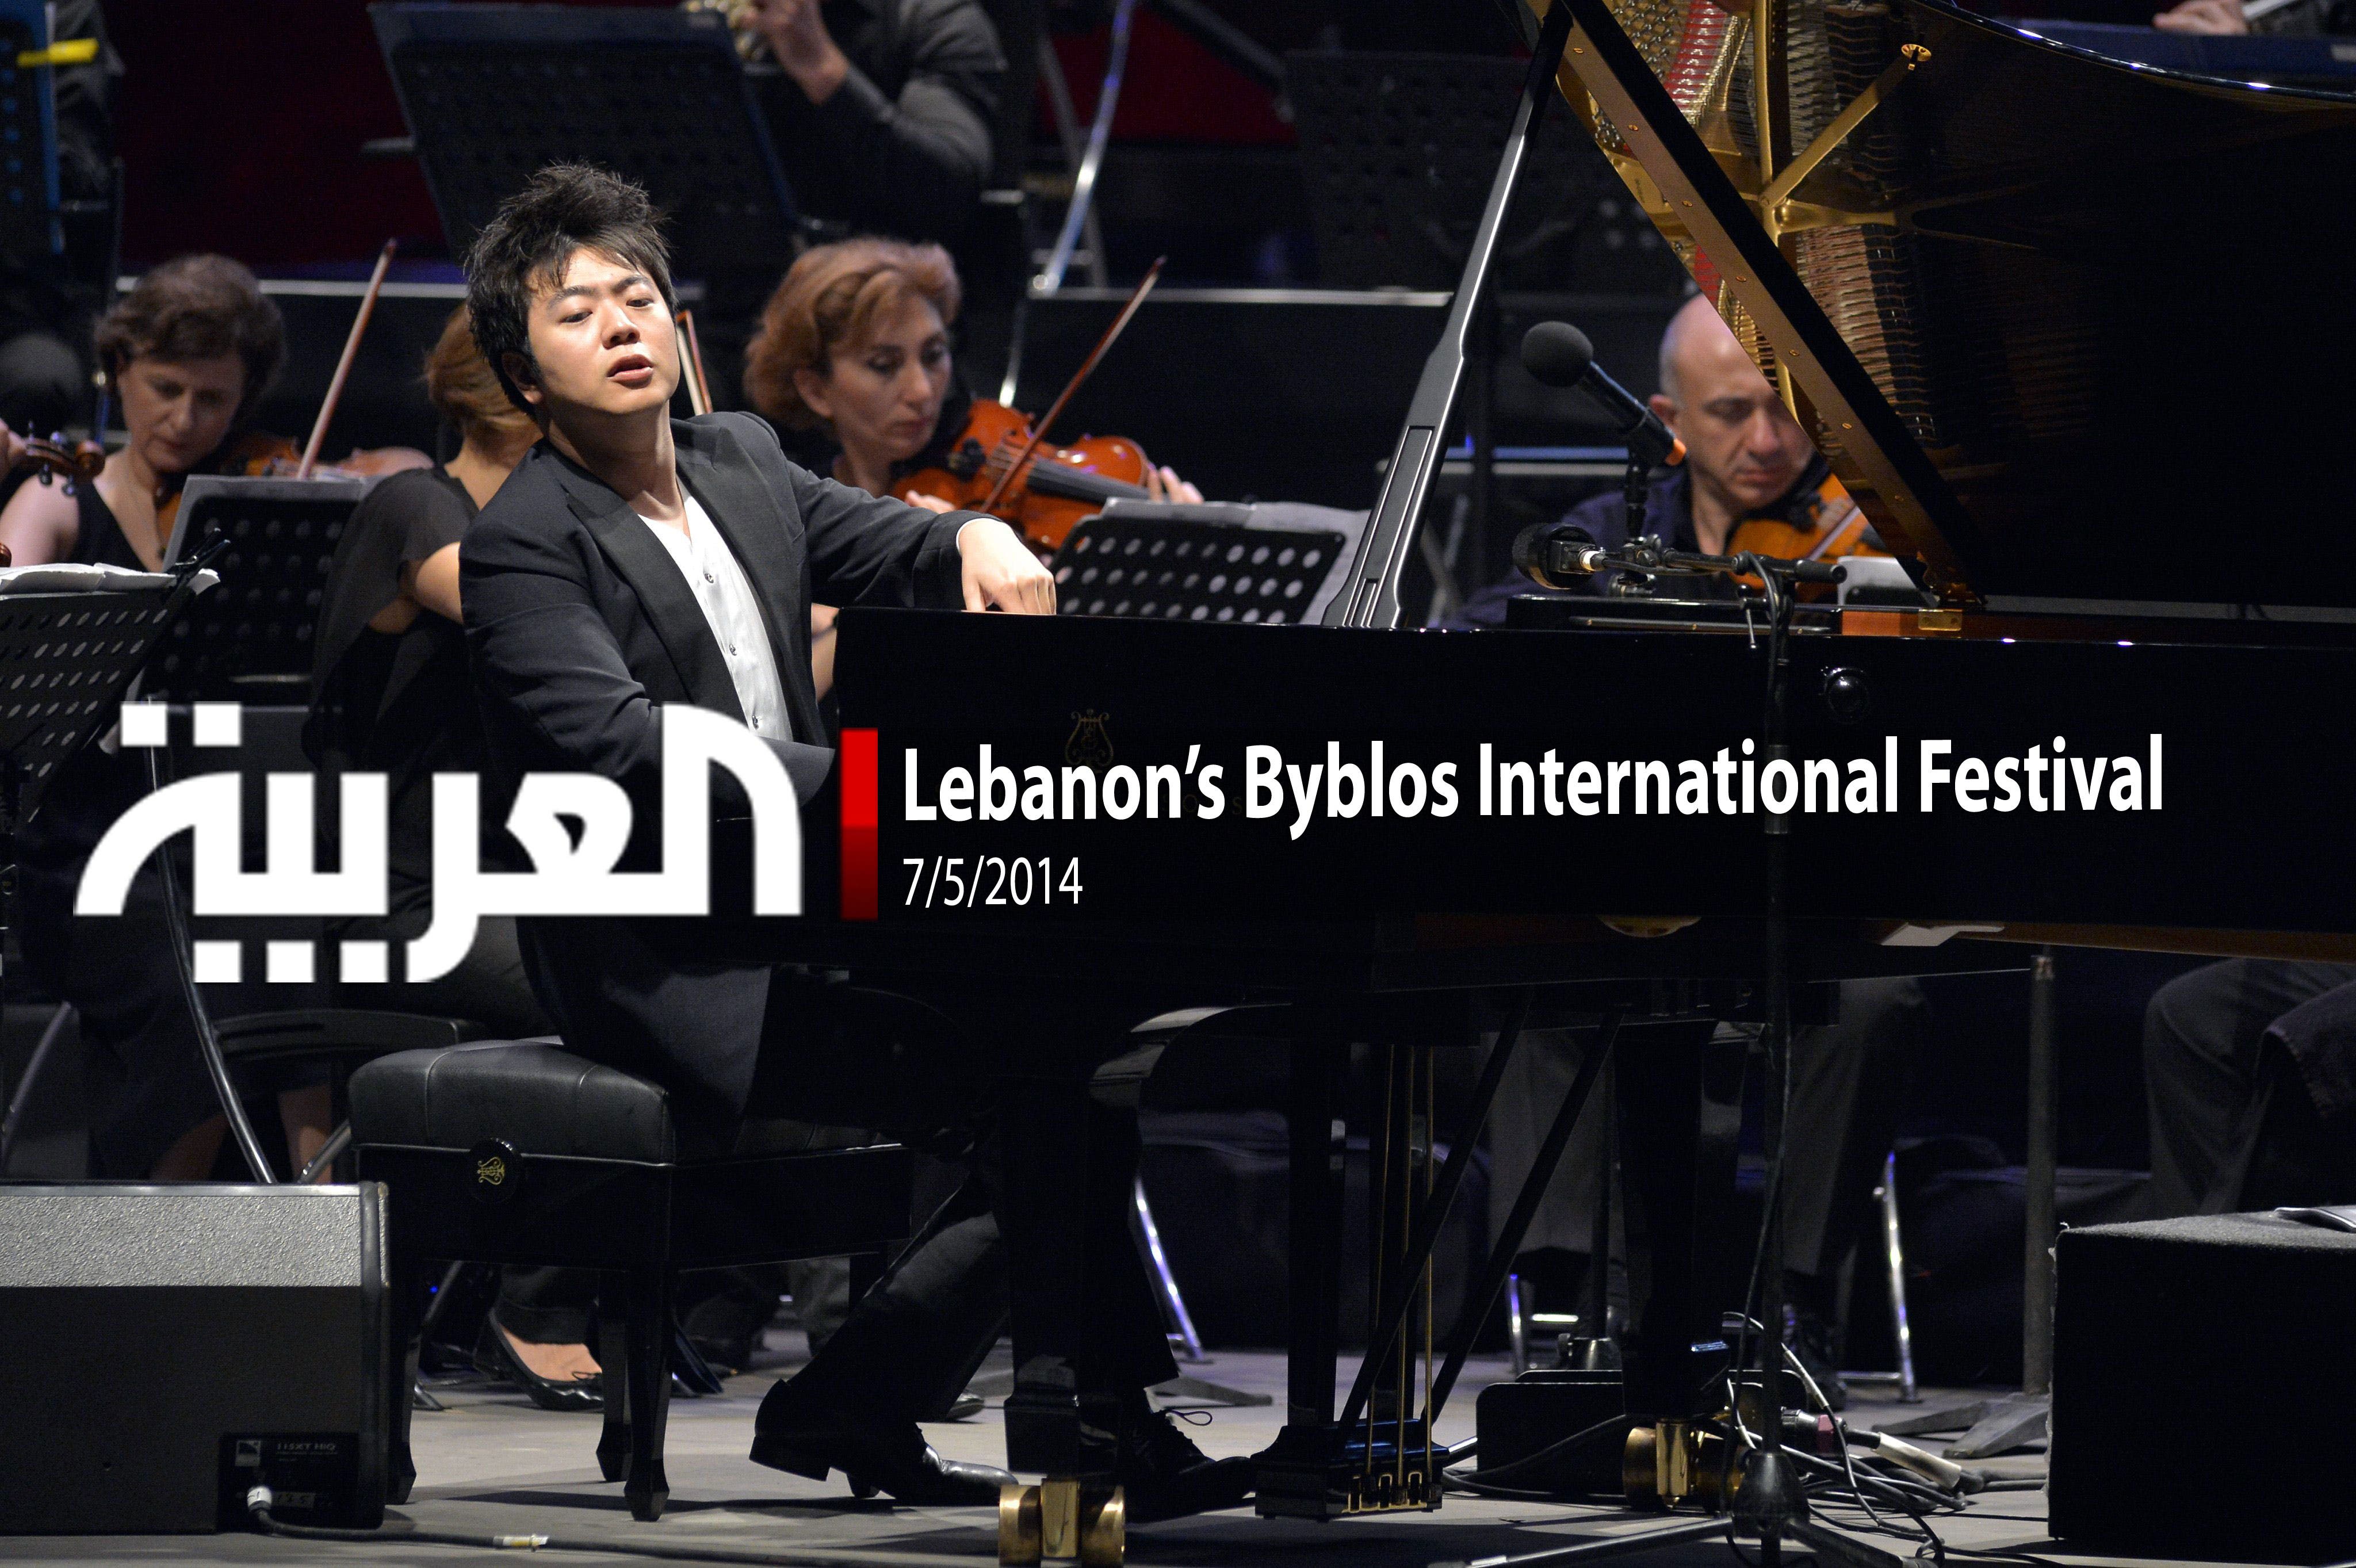 Lebanon’s Byblos International Festival